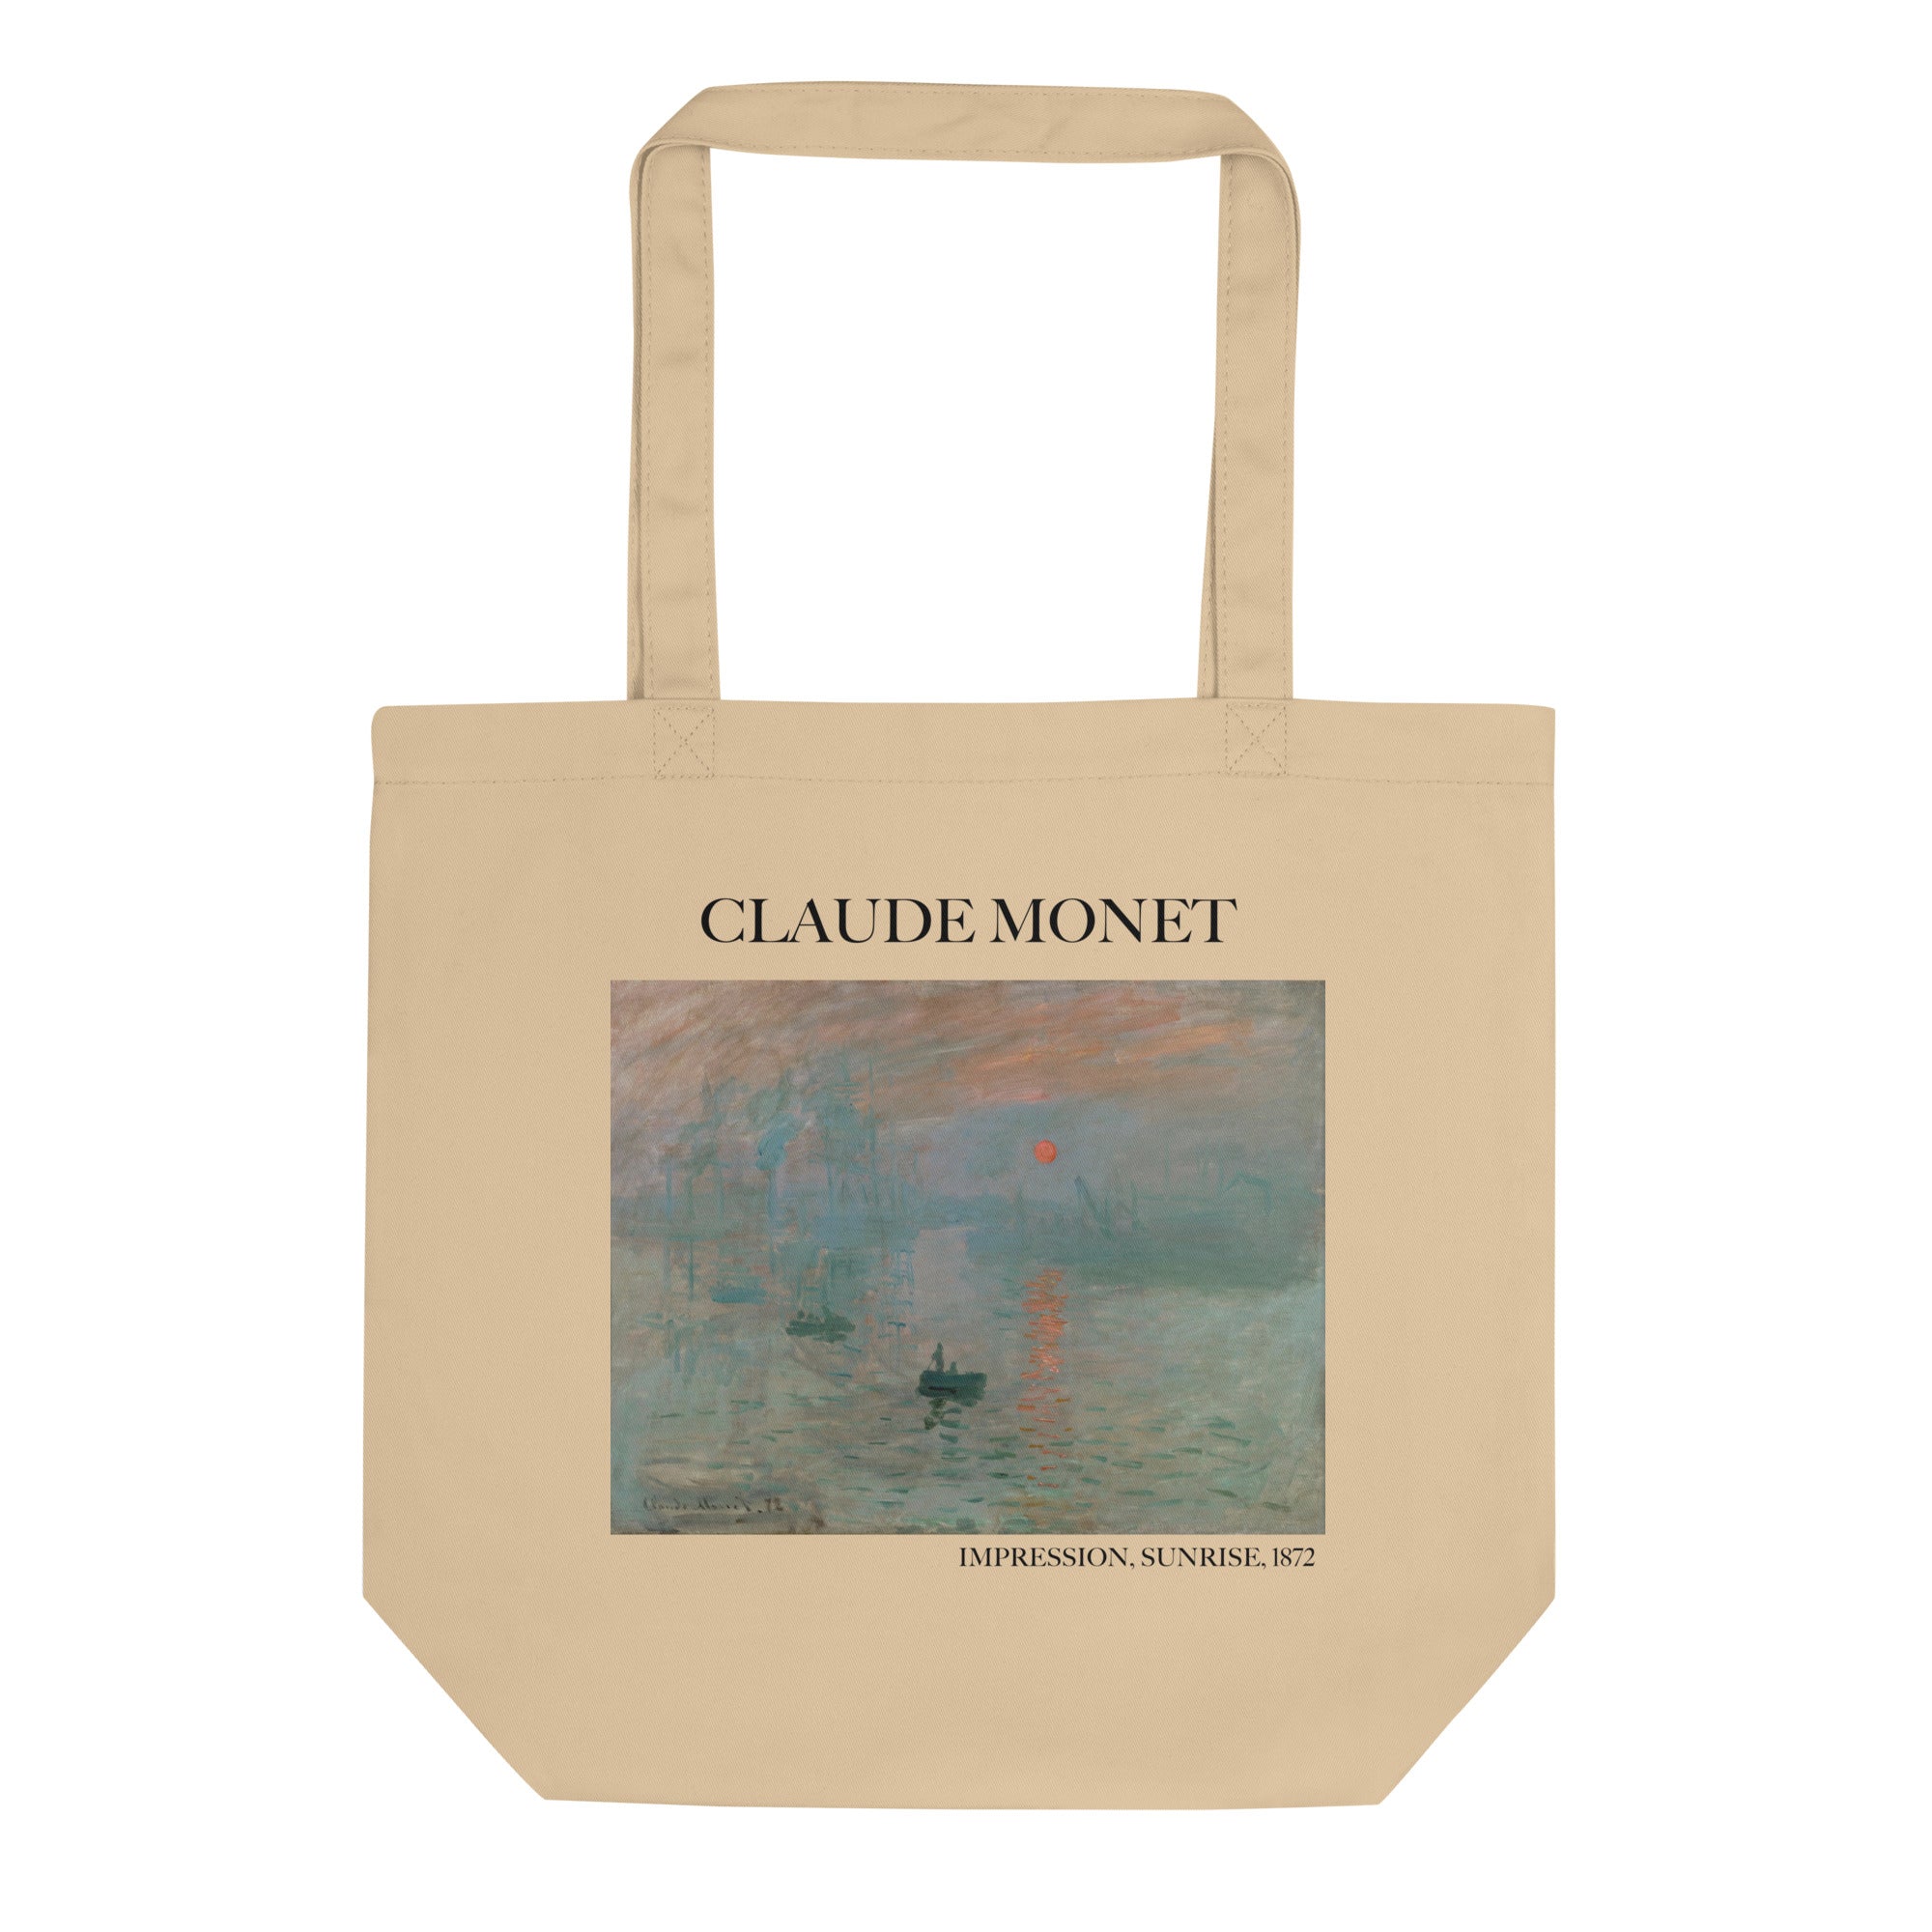 Claude Monet 'Impression, Sonnenaufgang' berühmtes Gemälde Tragetasche | Umweltfreundliche Kunst Tragetasche